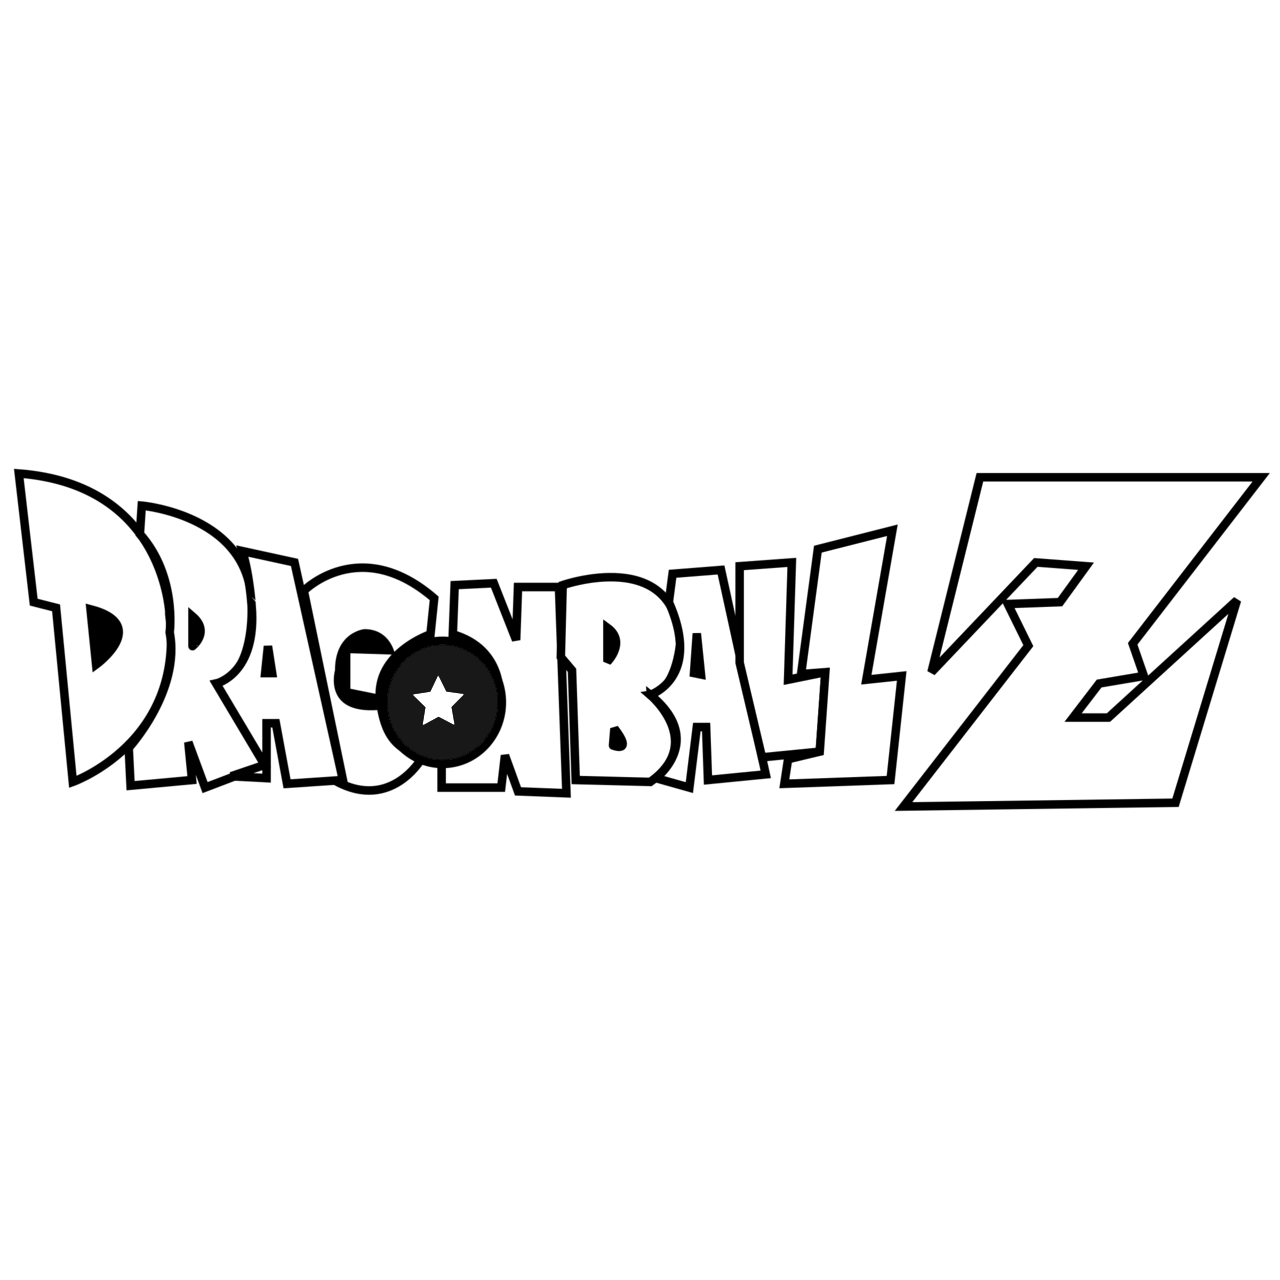 dragon ball z